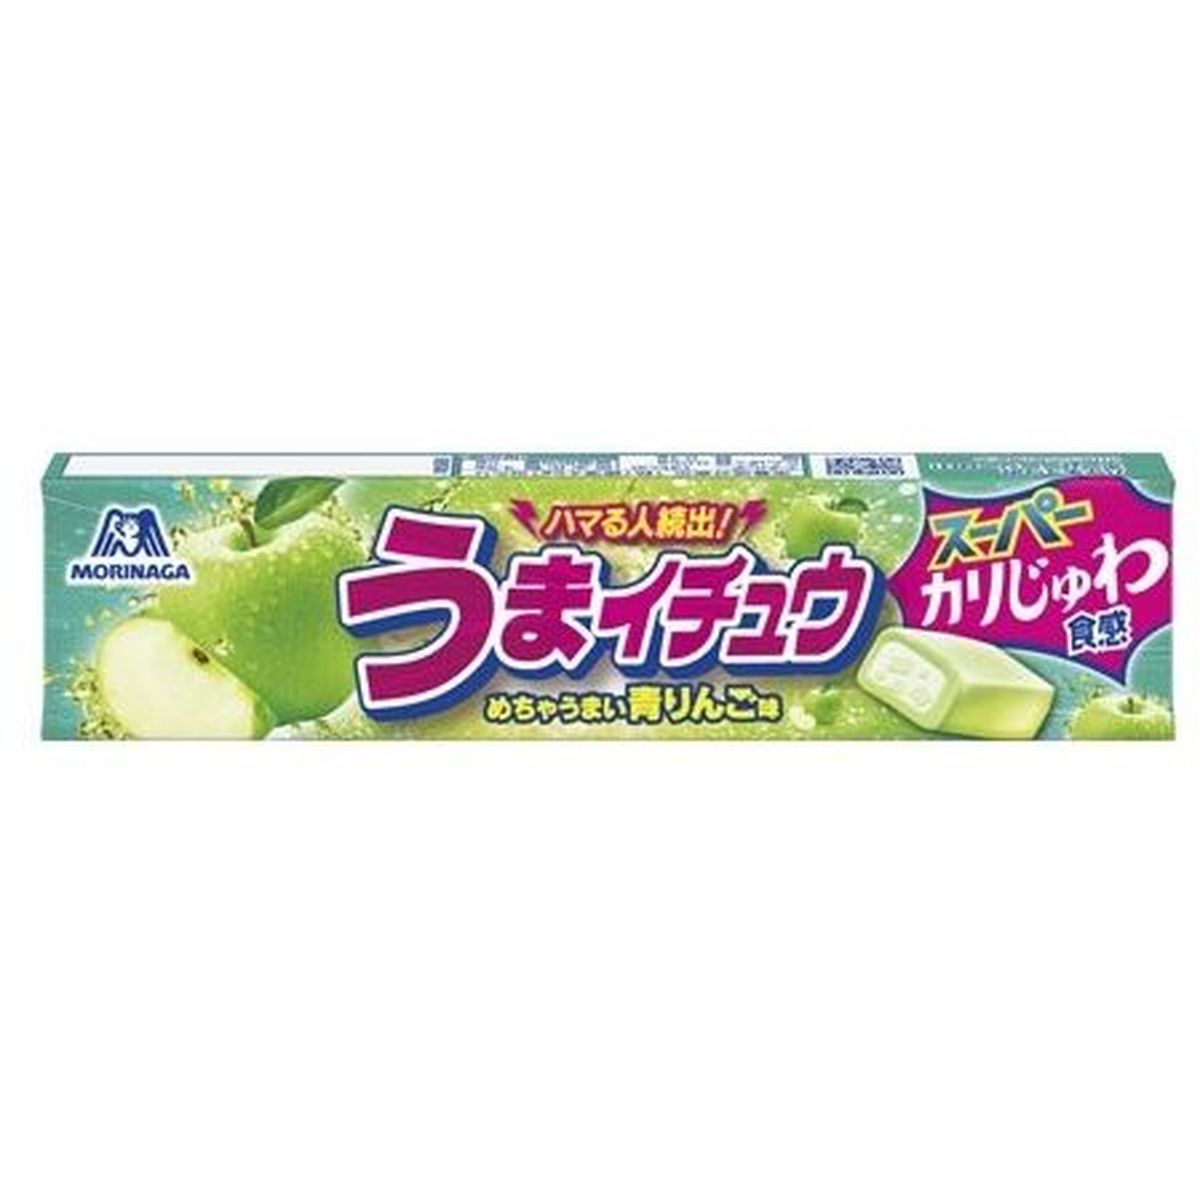 【12個入リ】森永製菓 ウマイチュウ 青リンゴ味 12粒